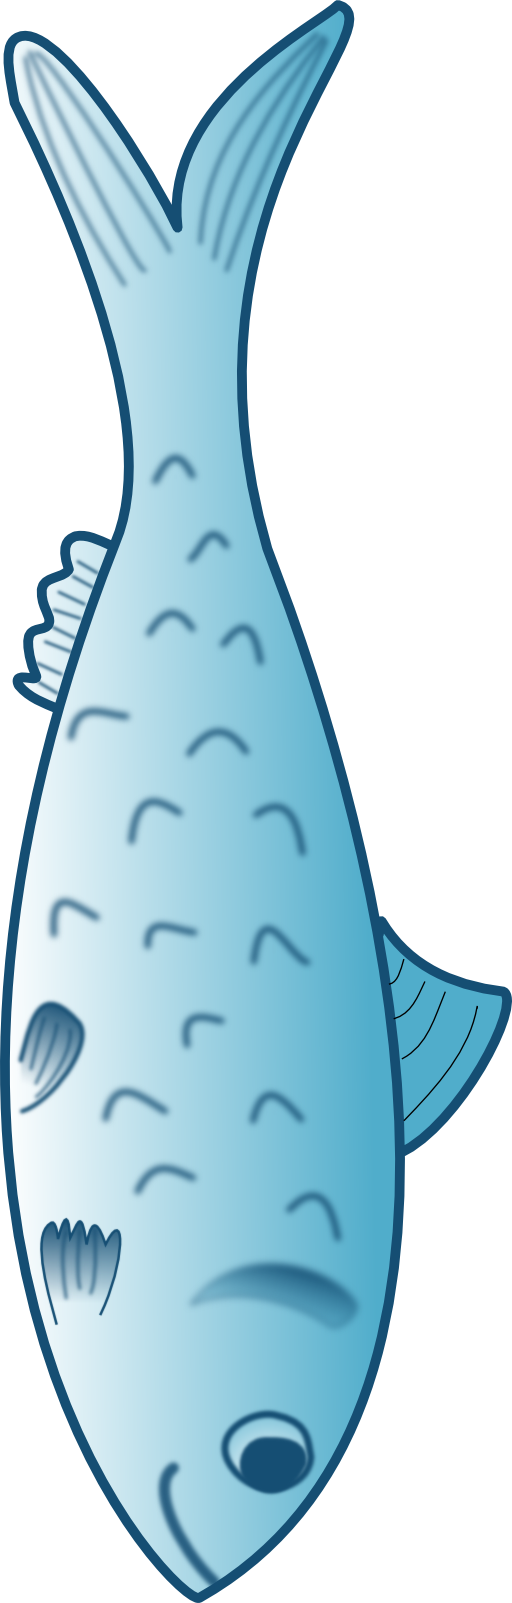 fish clipart clip art